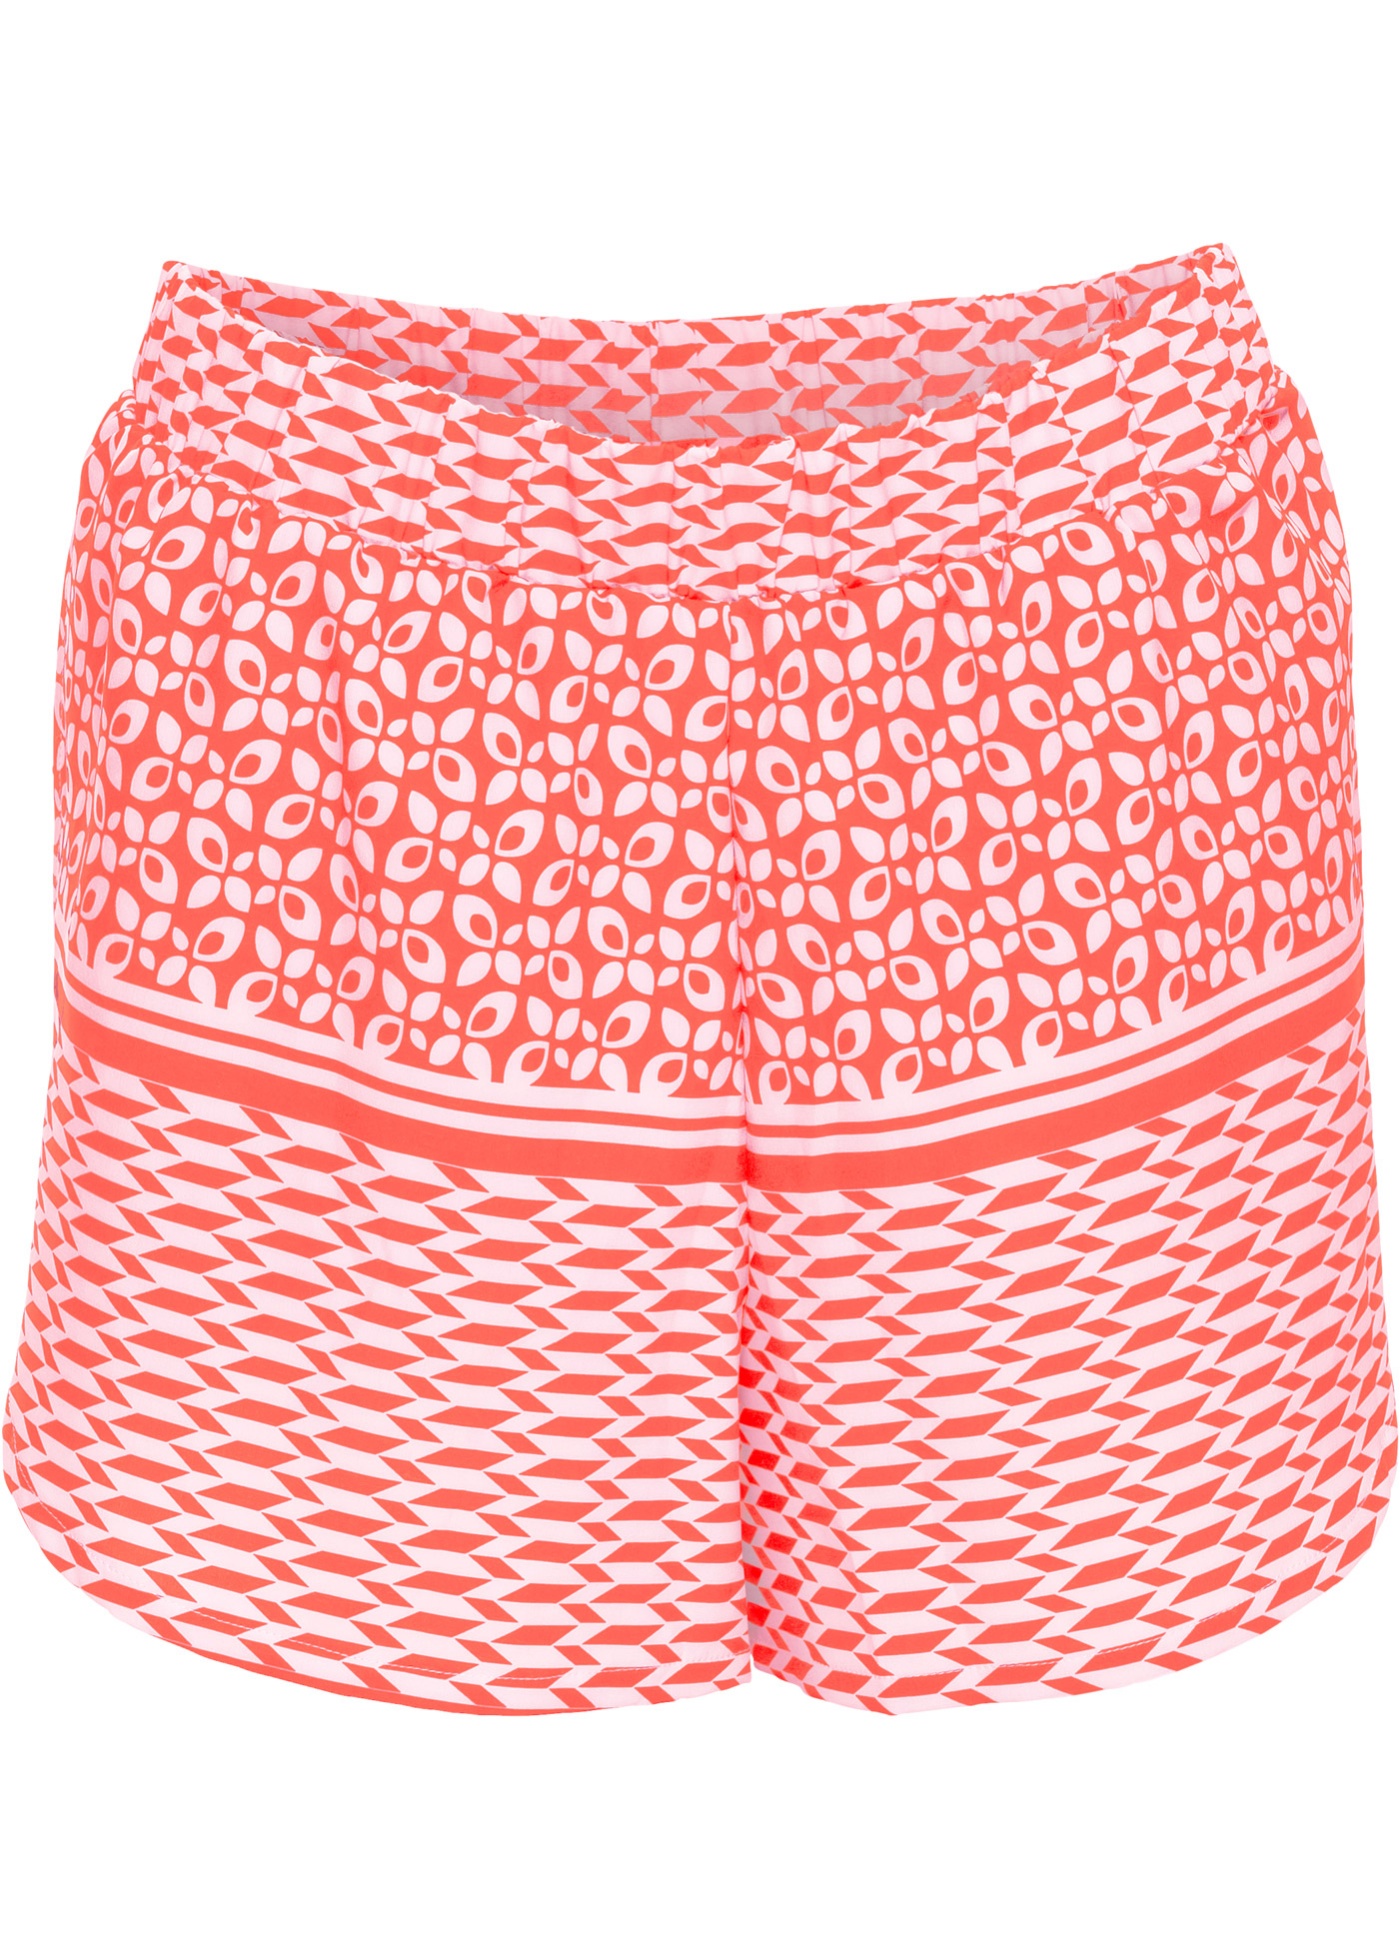 Pantaloncino da spiaggia (Fucsia) - bpc bonprix collection